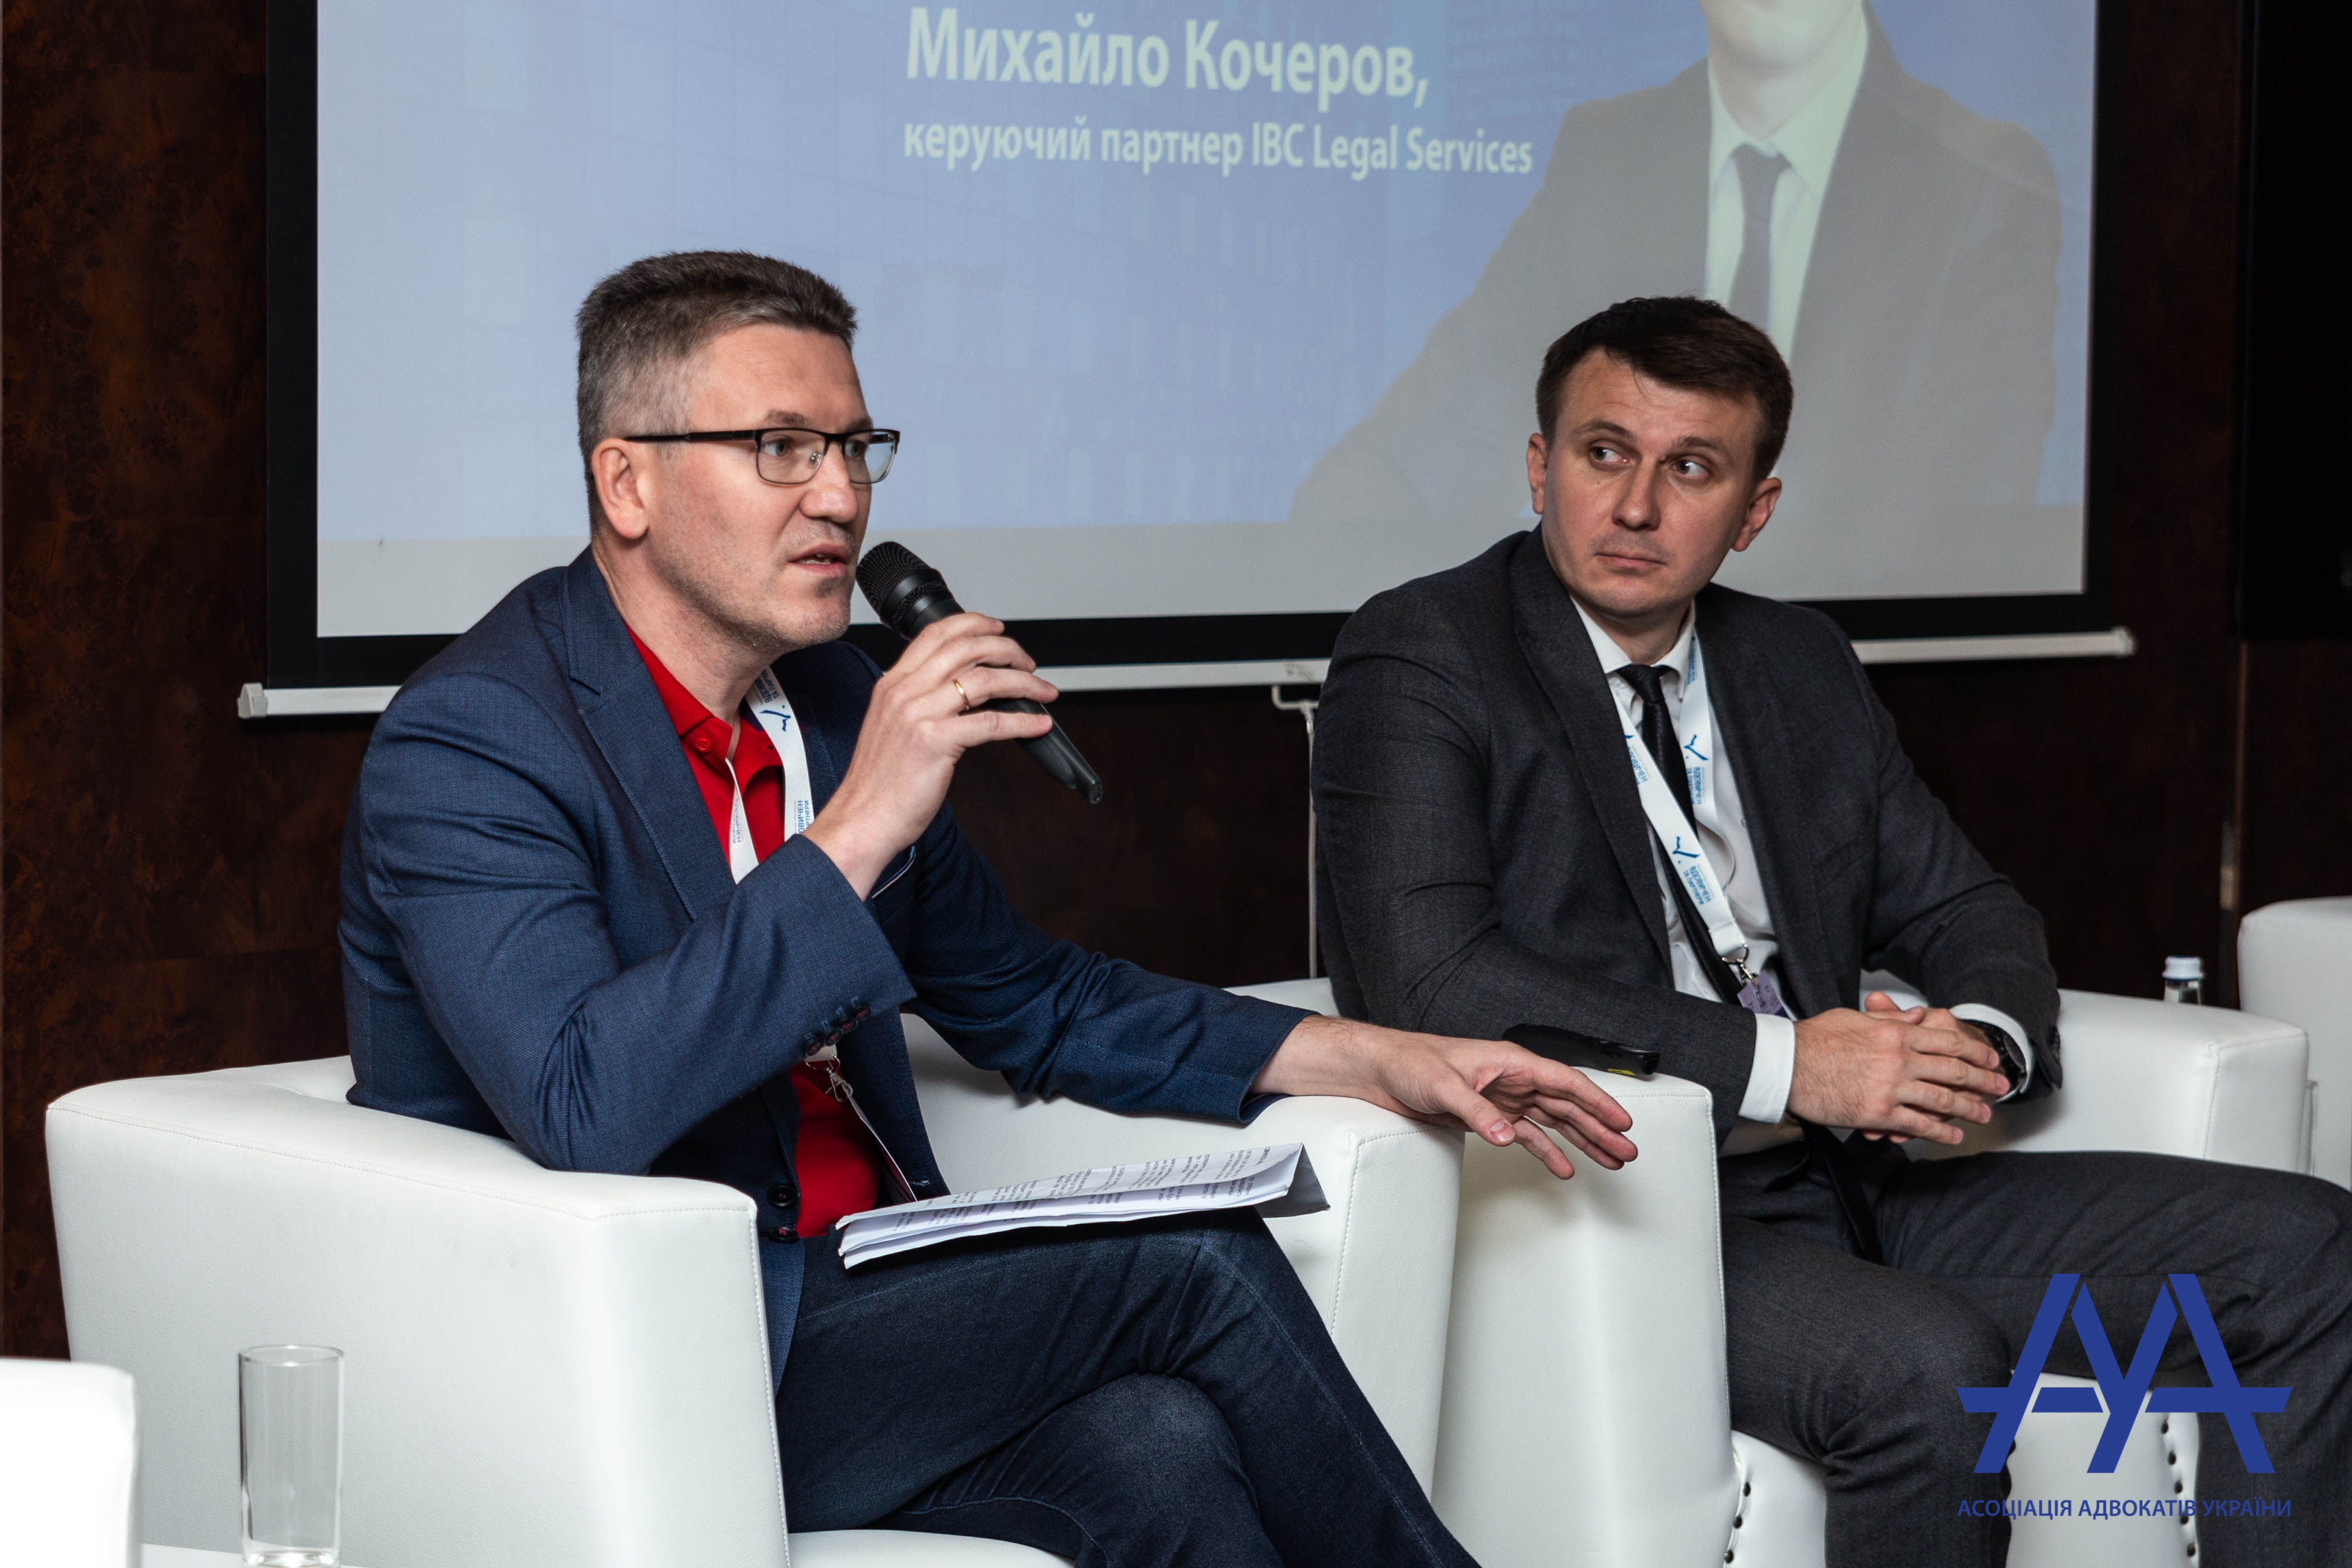 20 сентября 2019 состоялось очередное масштабное мероприятие Ассоциации адвокатов Украины